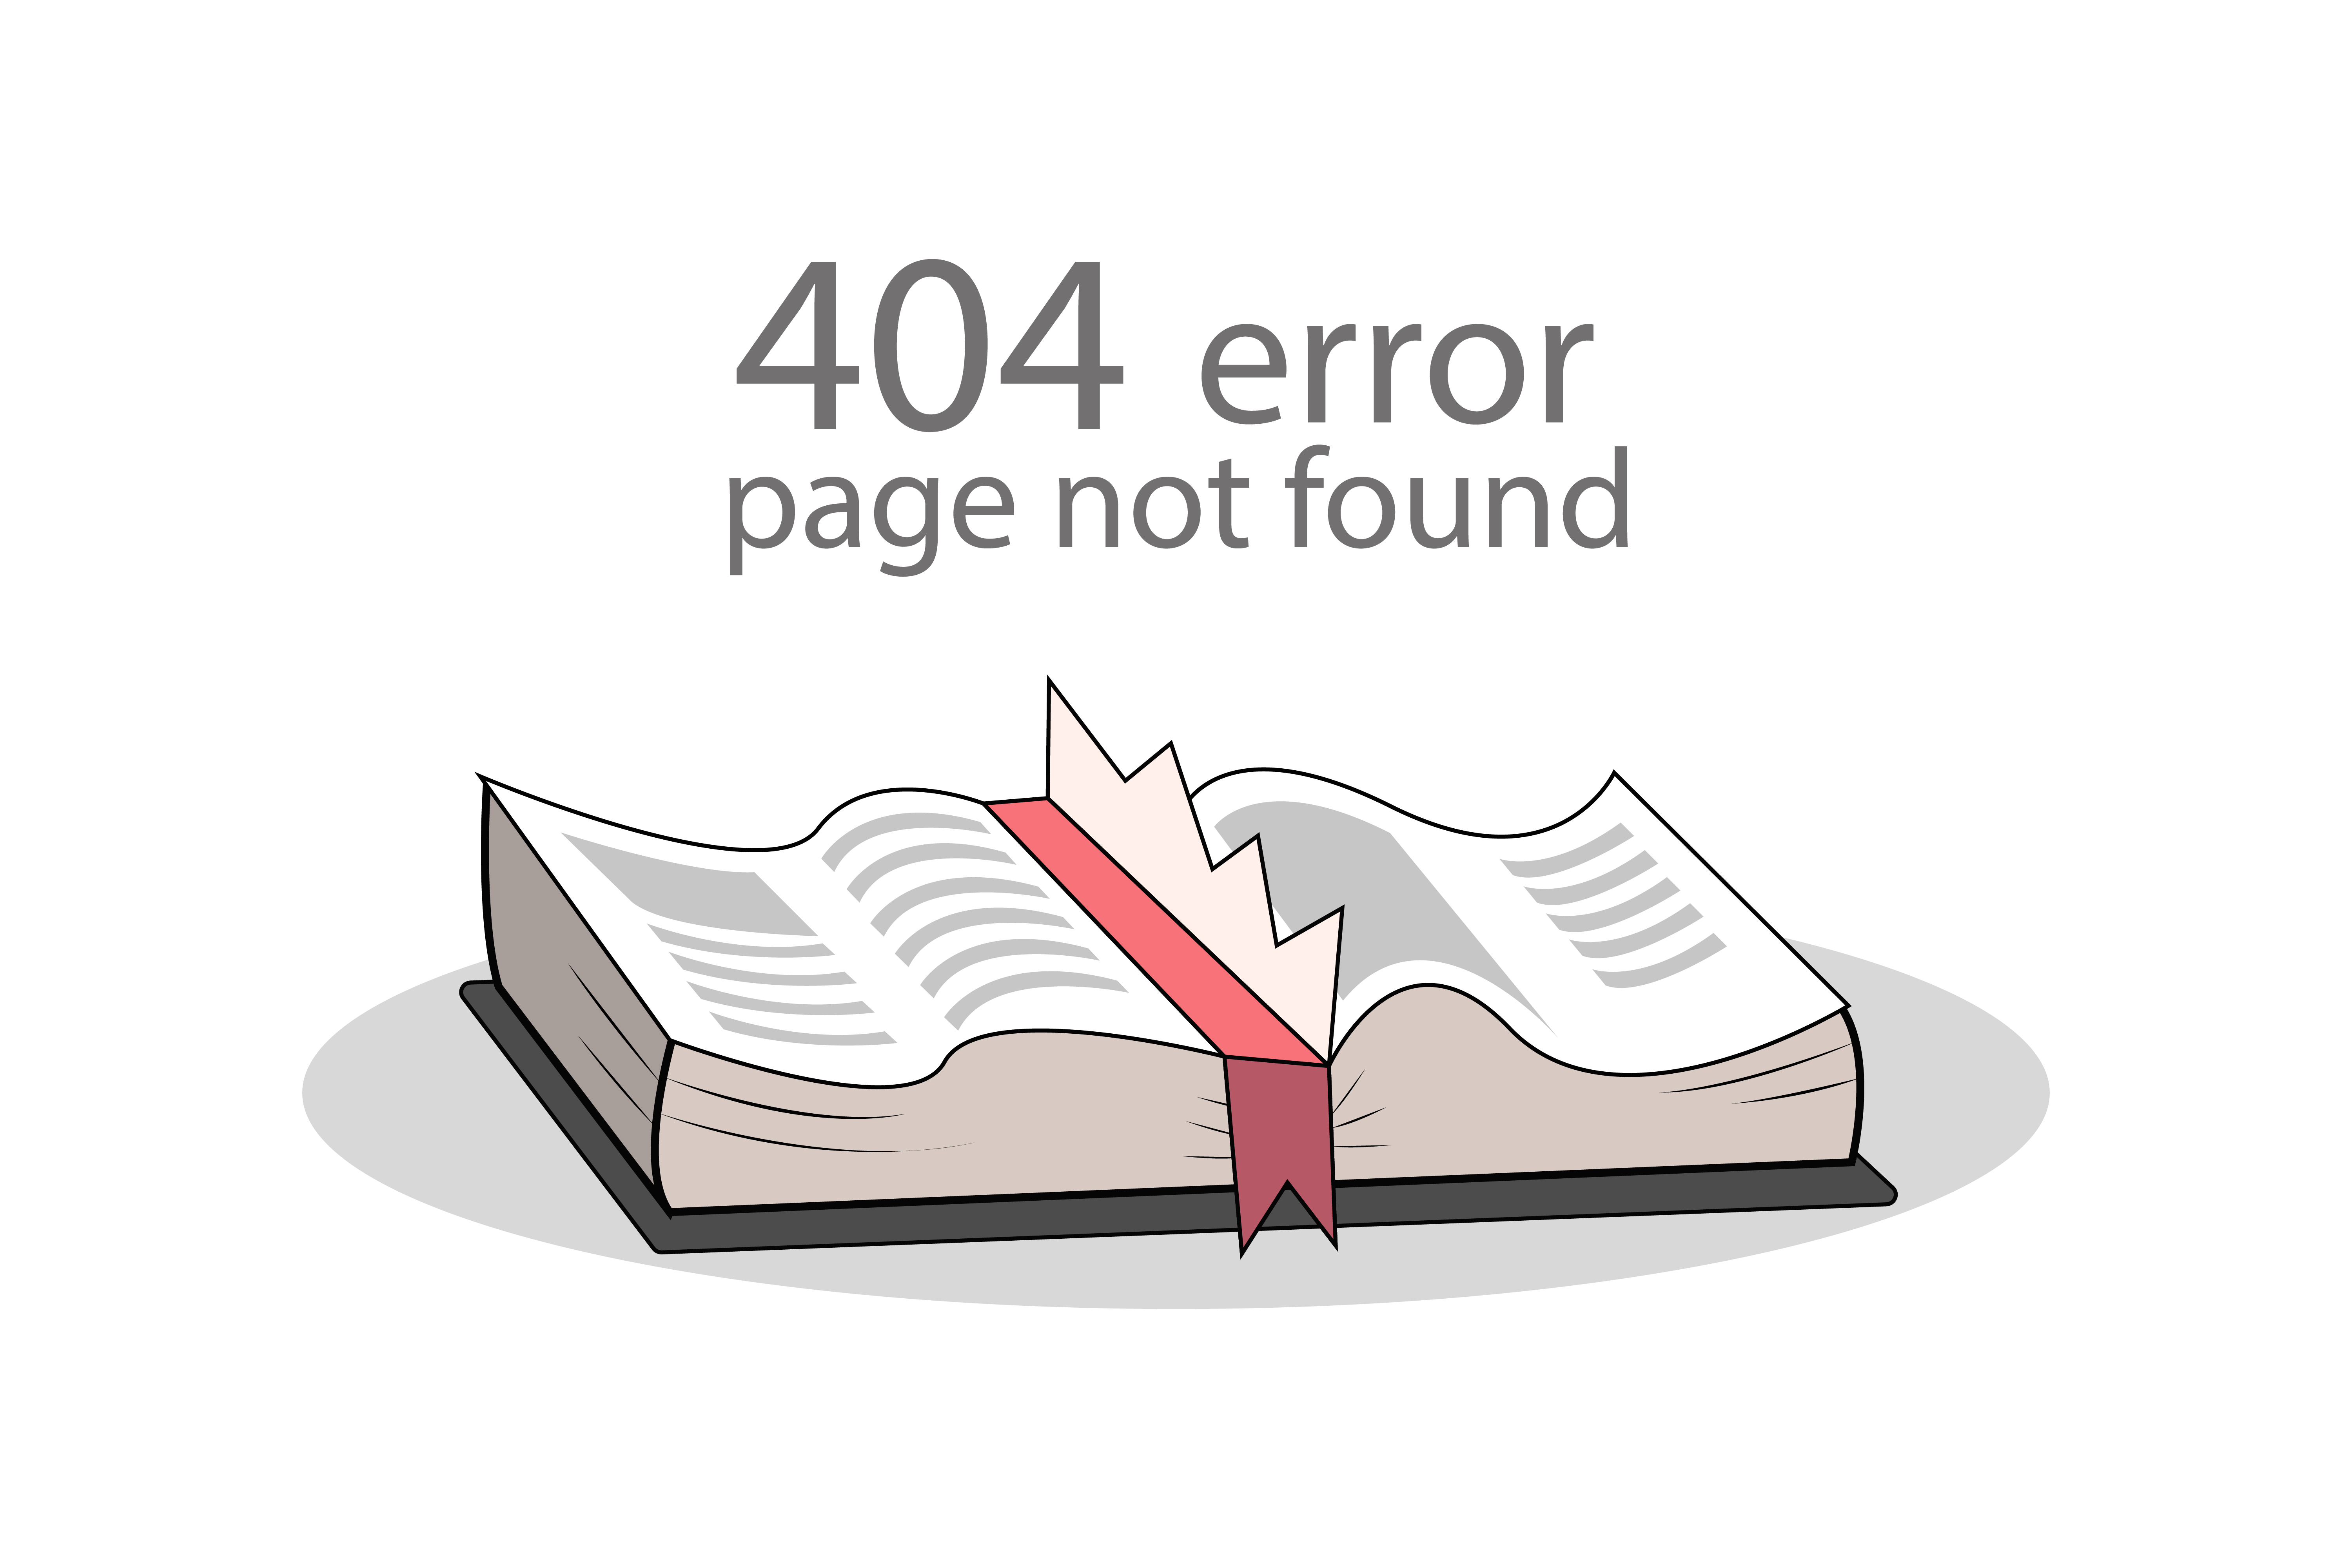 ce que signifie http 404 introuvable